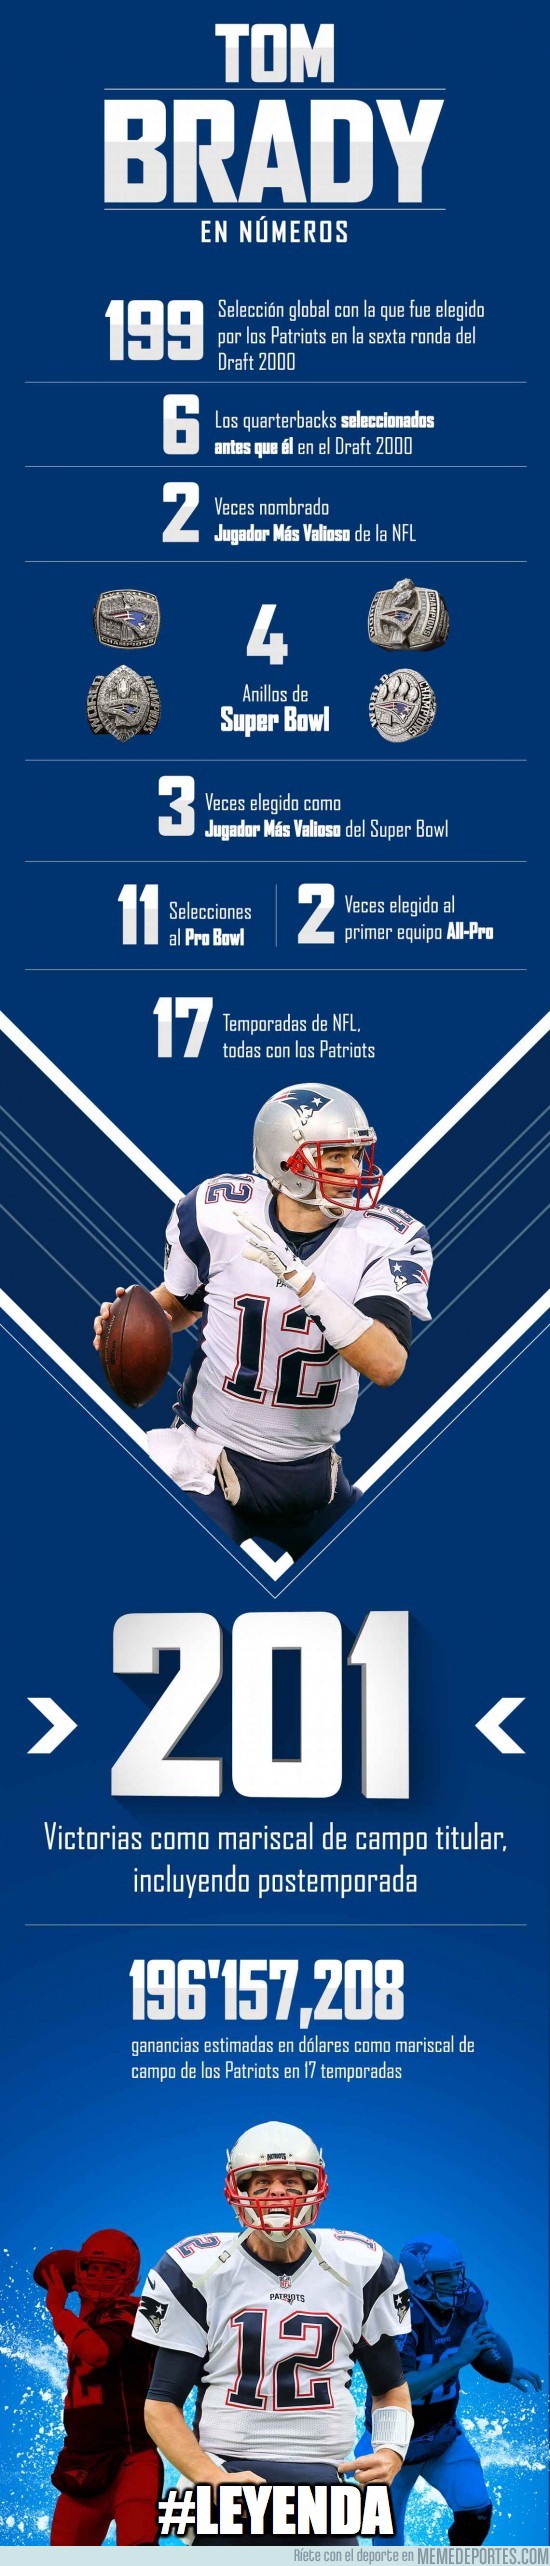 932480 - La leyenda de Tom Brady en números